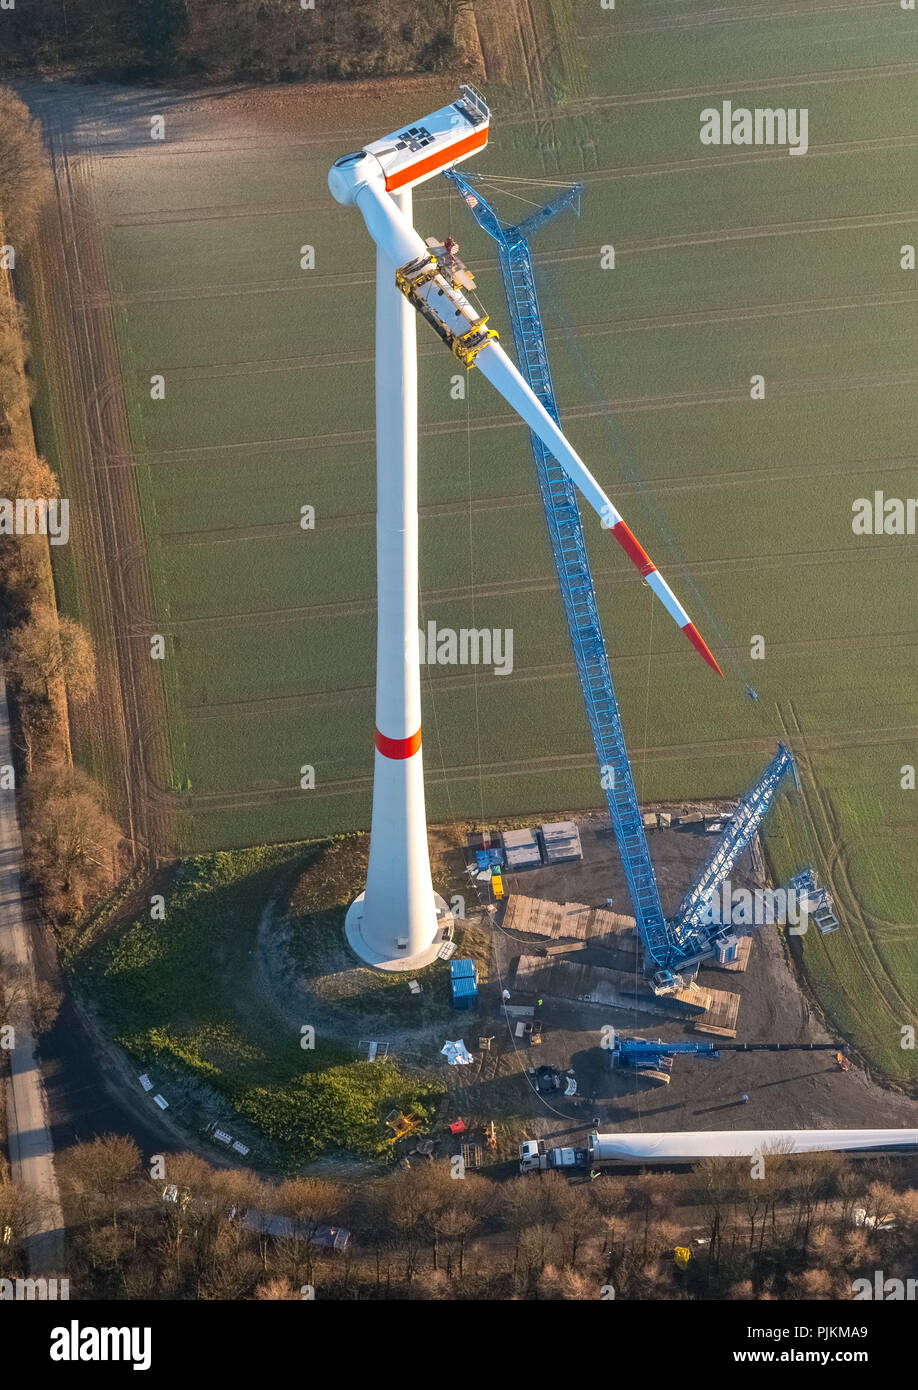 L'énergie éolienne, l'usine ferme éolienne Uphusen entre Lavesumer Straße et Münsterstraße, la construction des éoliennes, l'énergie éolienne, l'énergie de remplacement, de l'énergie renouvelable, Haltern, Münsterland, Rhénanie du Nord-Westphalie, Allemagne Banque D'Images